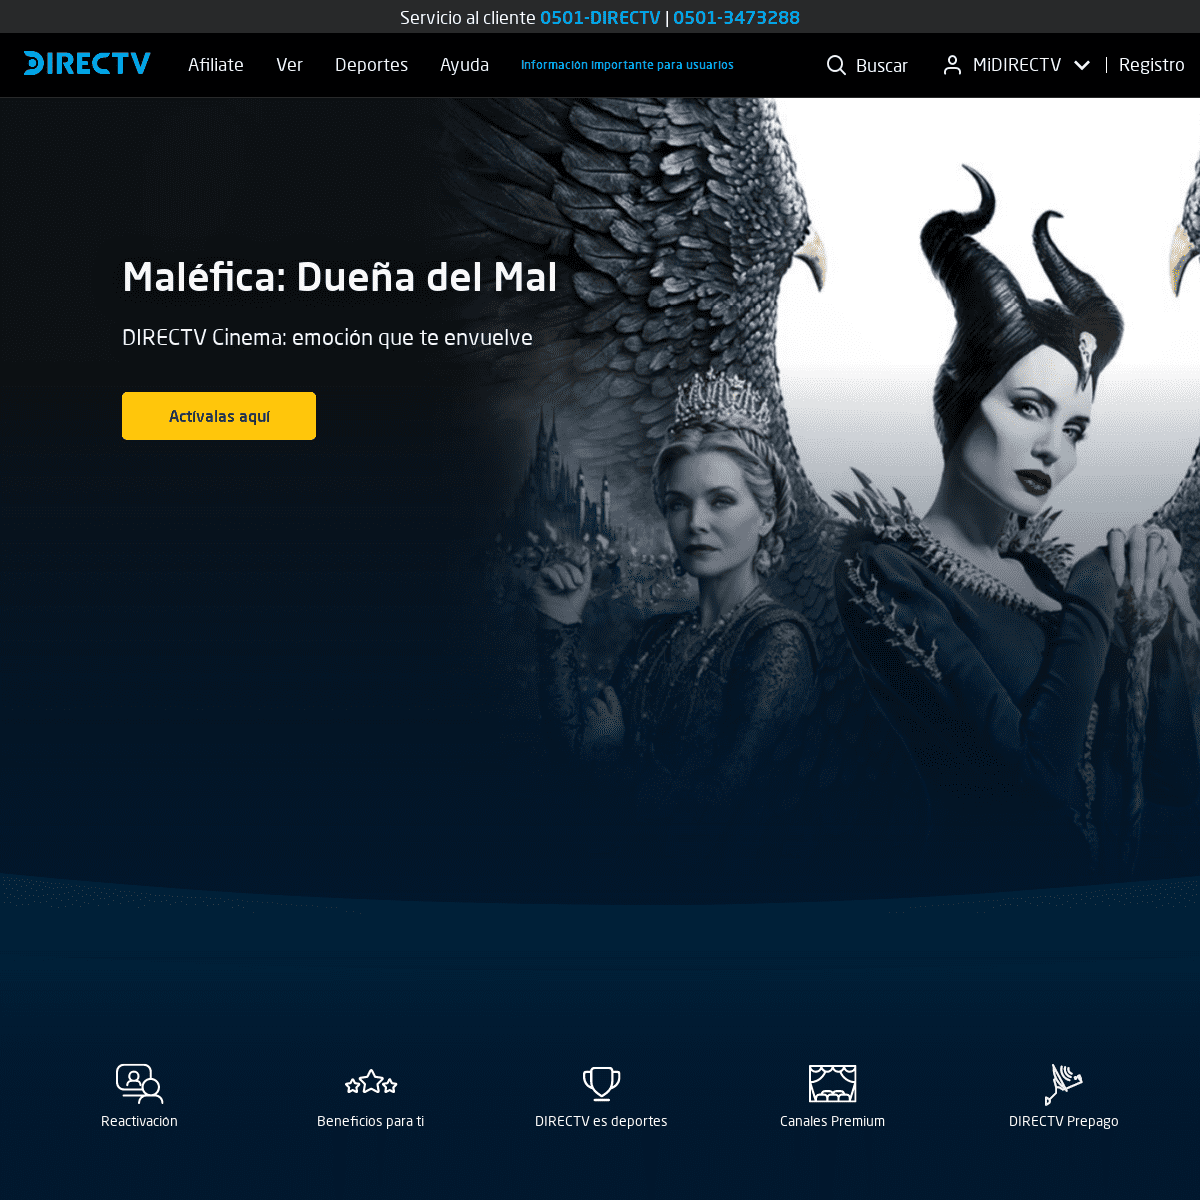 A complete backup of directv.com.ve